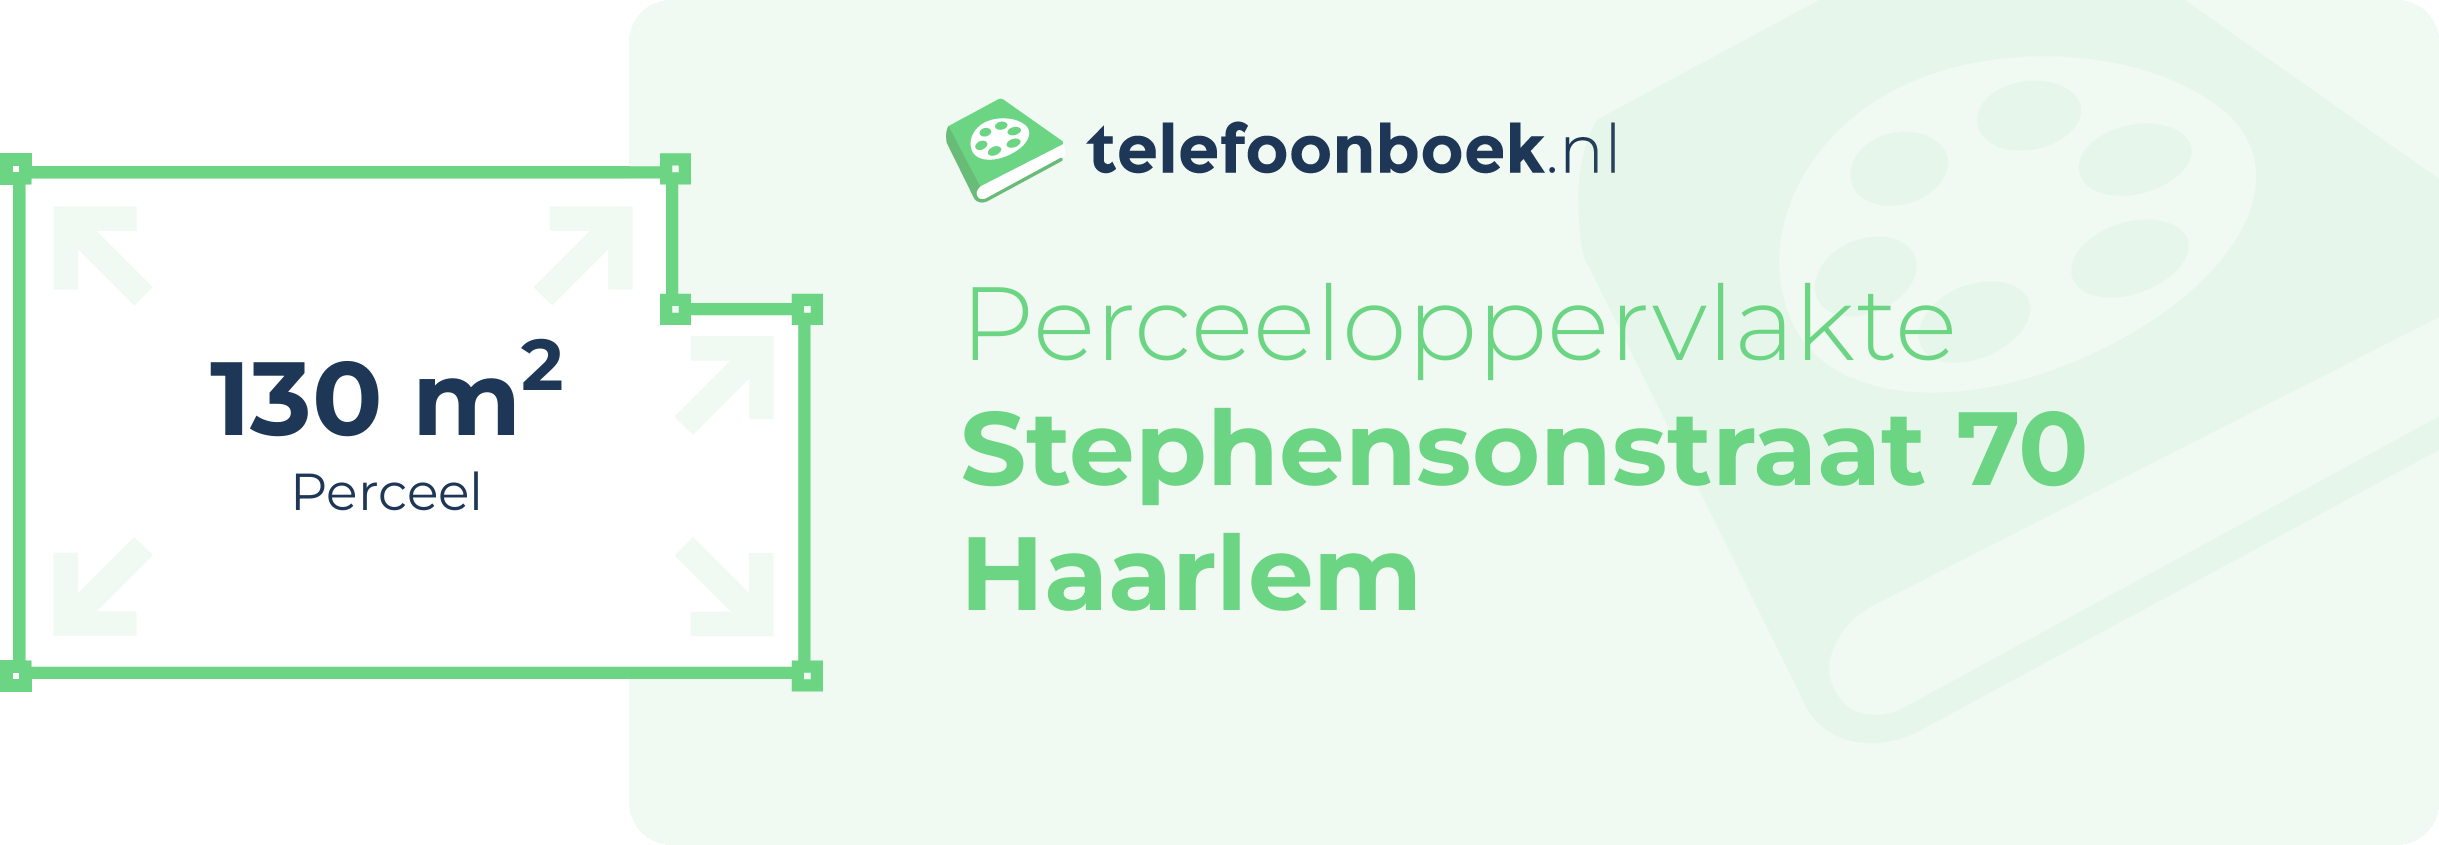 Perceeloppervlakte Stephensonstraat 70 Haarlem